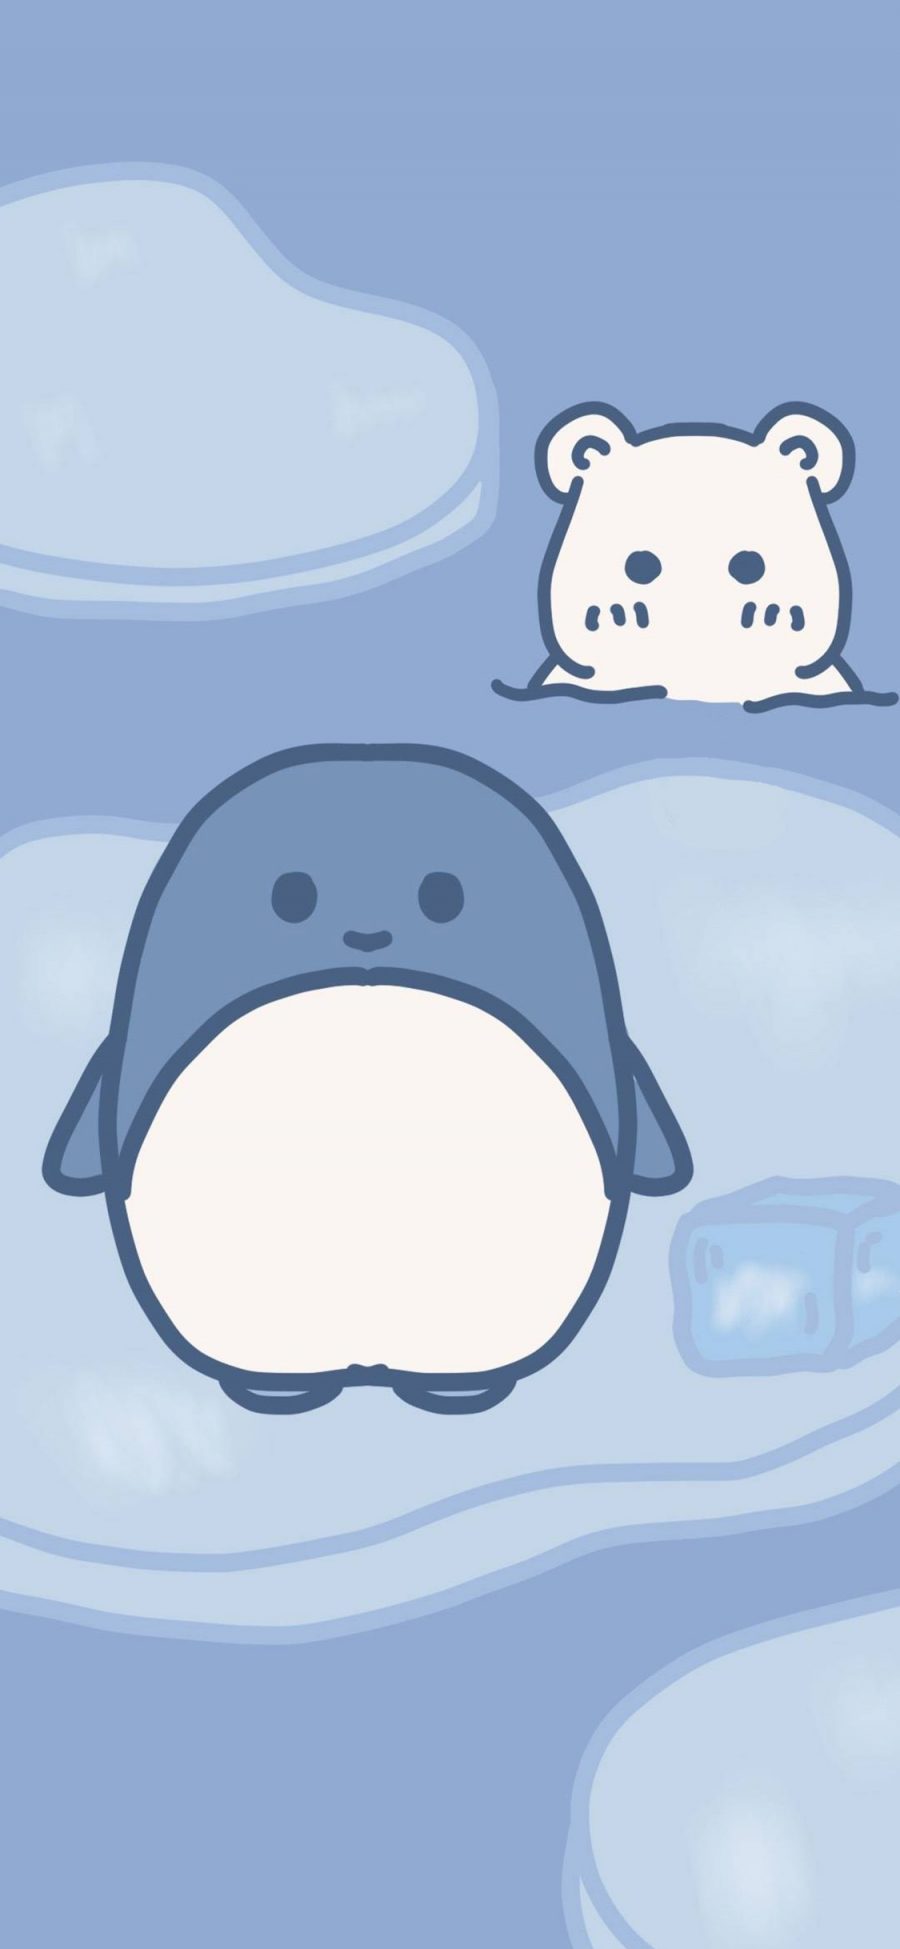 [2436×1125]卡通 小企鹅 老鼠 冰块 蓝色 苹果手机动漫壁纸图片